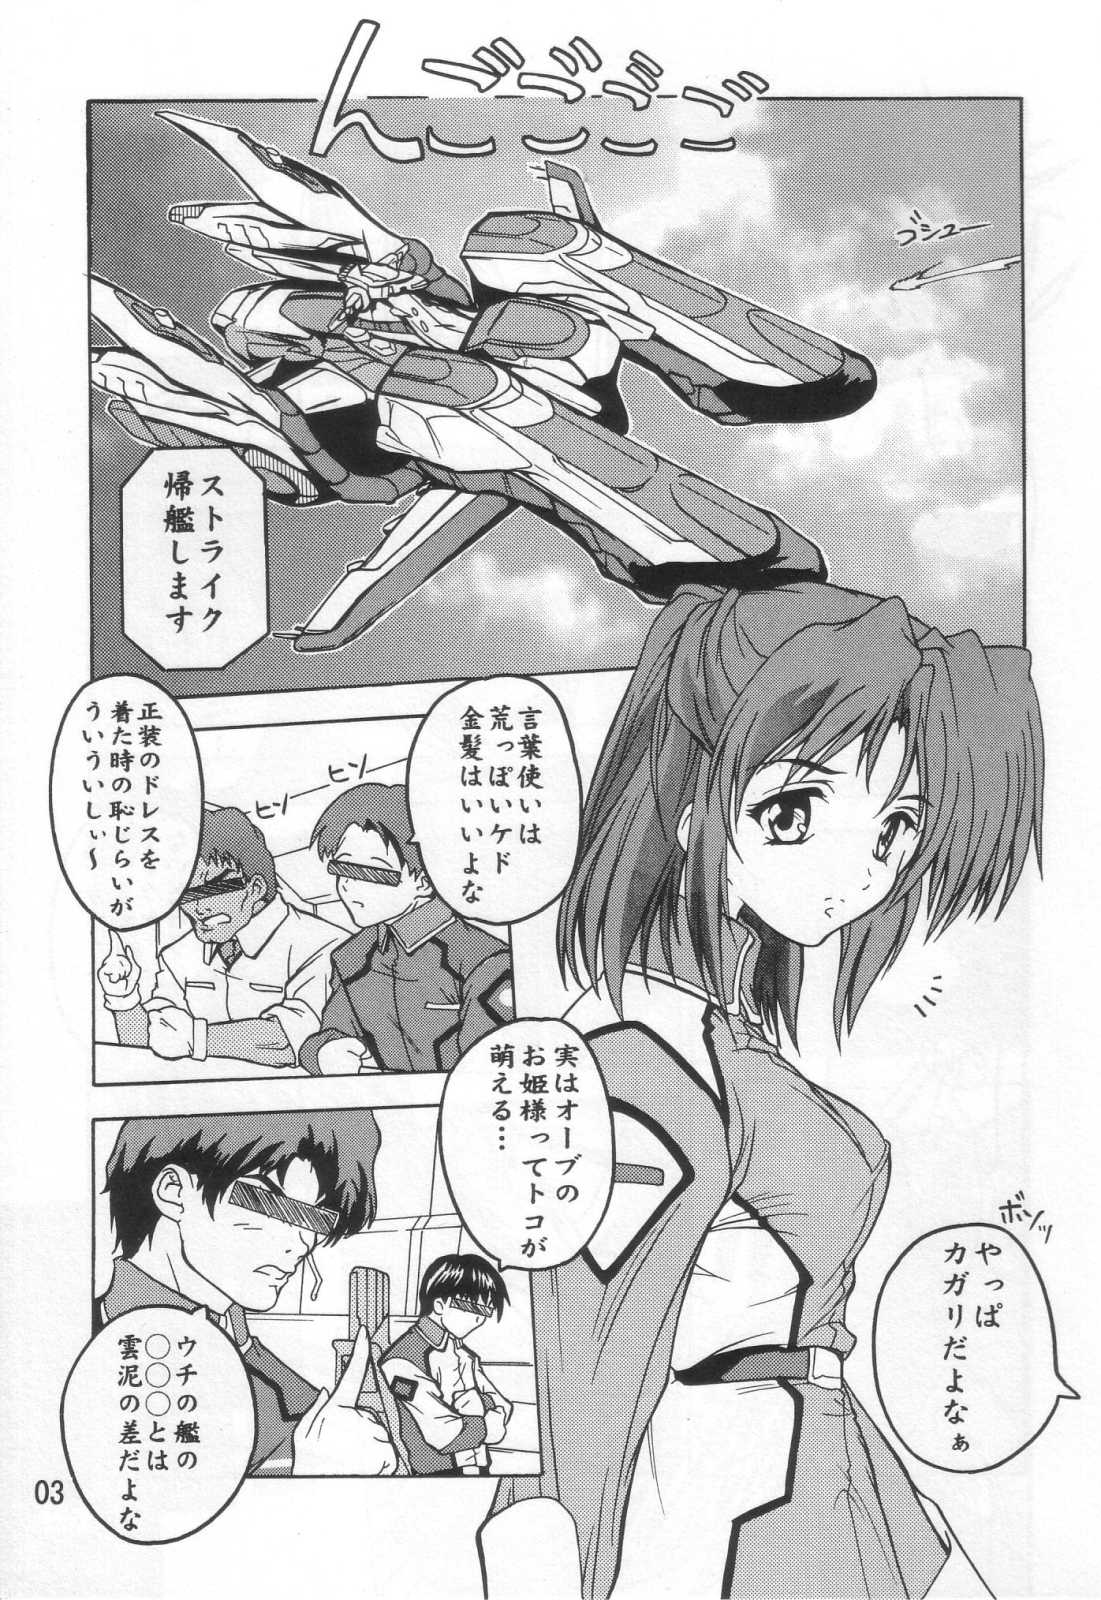 (SC21) [Studio Q (Natsuka Q-Ya)] Cagalli Mark 2 (Mobile Suit Gundam SEED) (サンクリ21) [すたぢおQ (奈塚Q弥)] Cagalli まぁ～くつぅ～ (機動戦士ガンダムSEED)